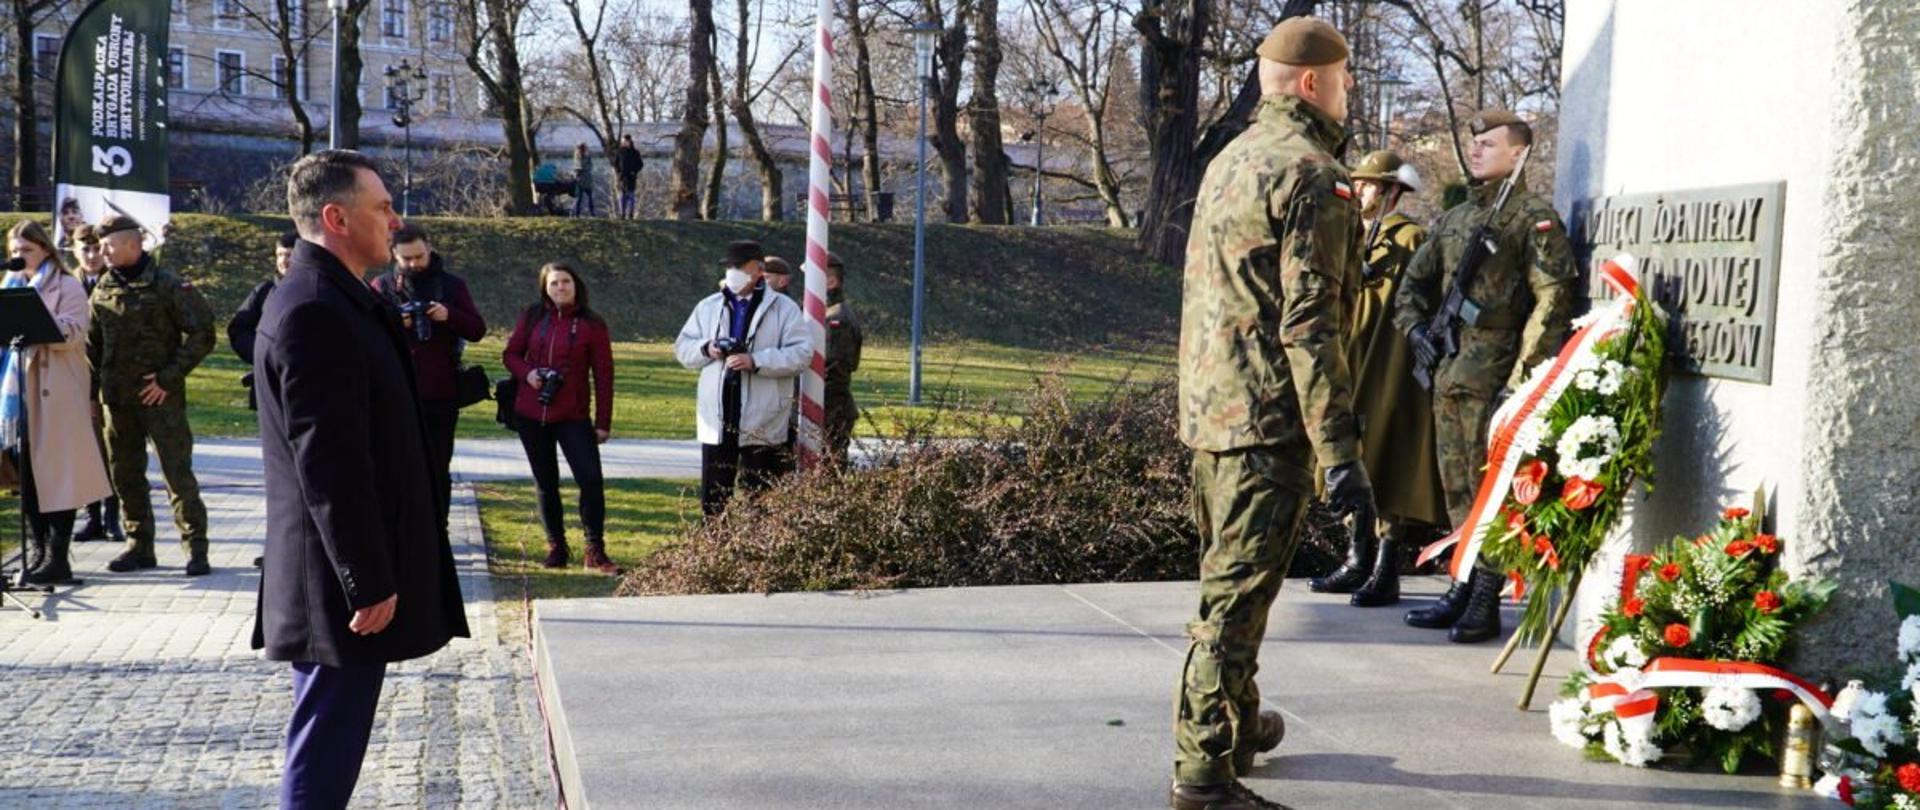 Dyrektor generalny Podkarpackiego Urzędu Wojewódzkiego w Rzeszowie składa kwiaty pod pomnikiem poświęconym pamięci żołnierzy Armii Krajowej w Rzeszowie. Przed nim żołnierz, w tle fotoreporterzy i uczestnicy uroczystości.